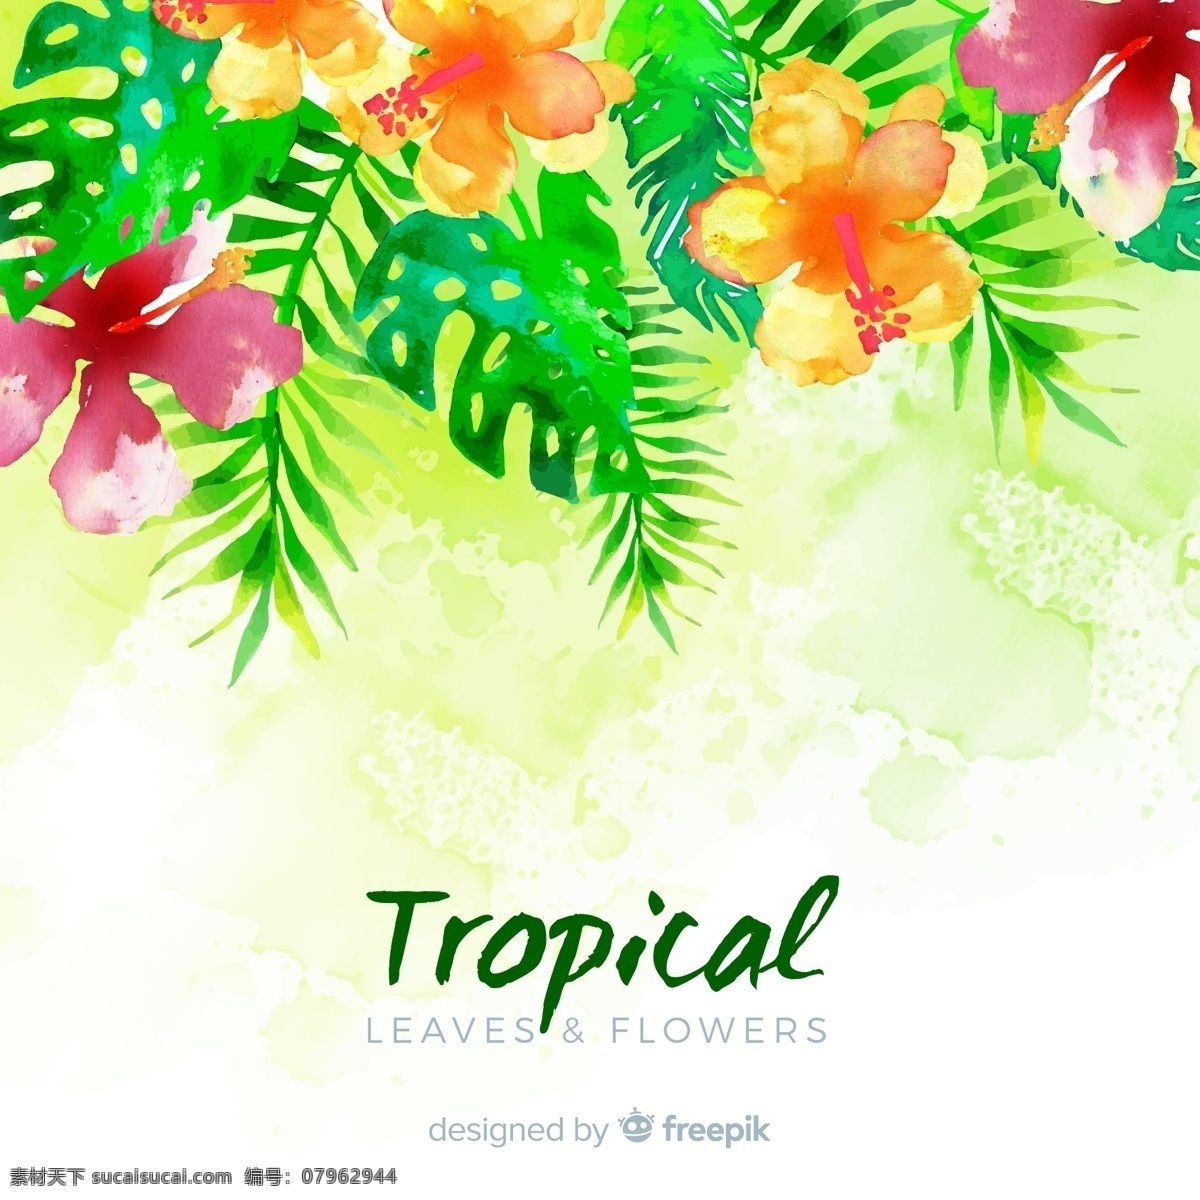 水彩 绘 美丽 热带 花卉 水彩绘 棕榈树叶 植物 生物世界 花草